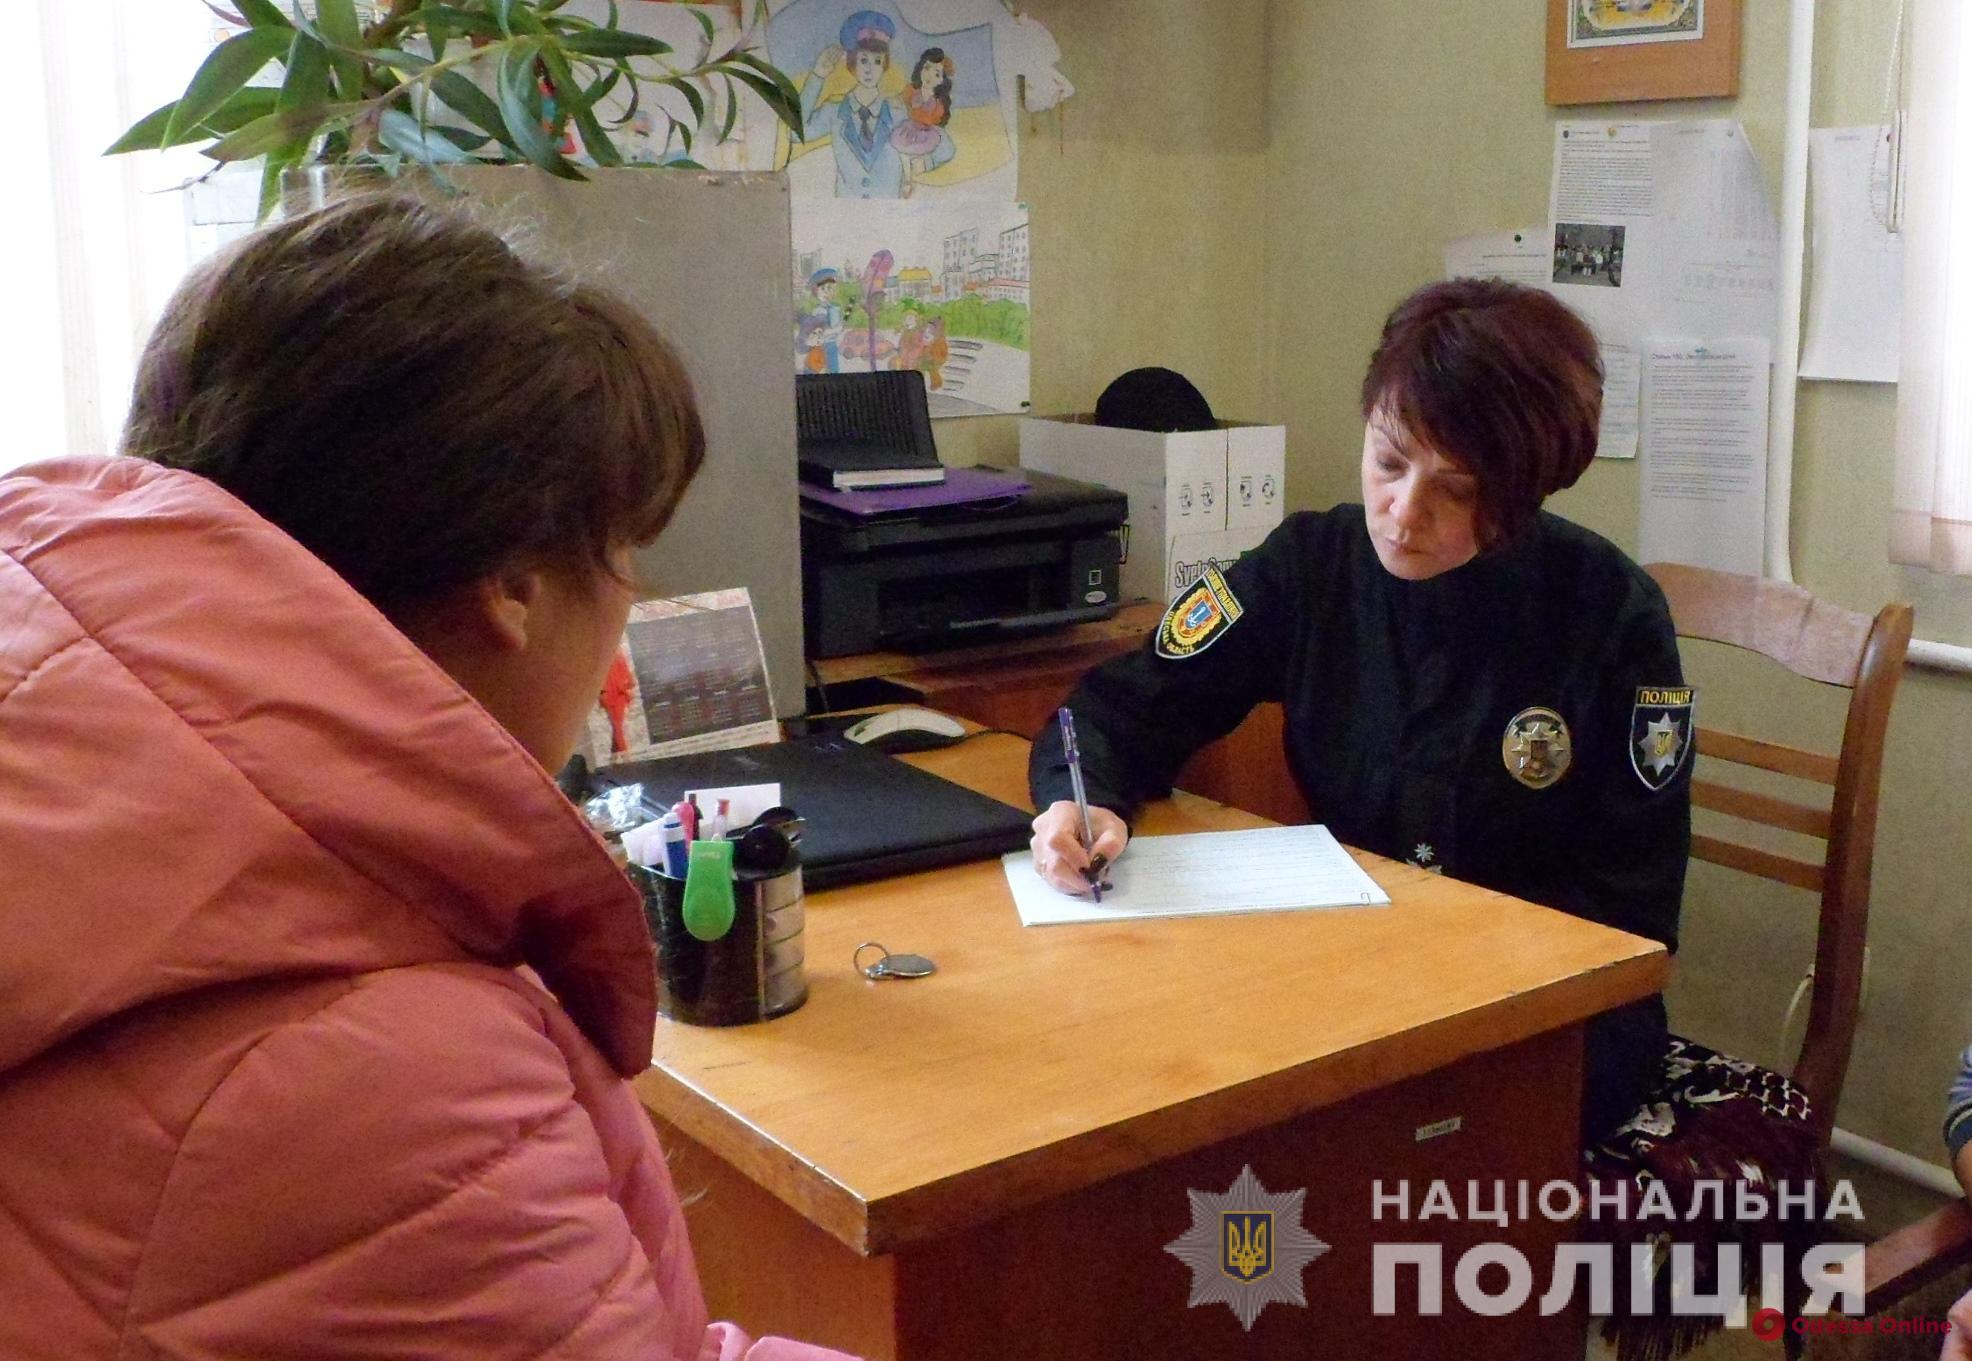 Сбежала на свидание: в Подольске нашли пропавшую школьницу